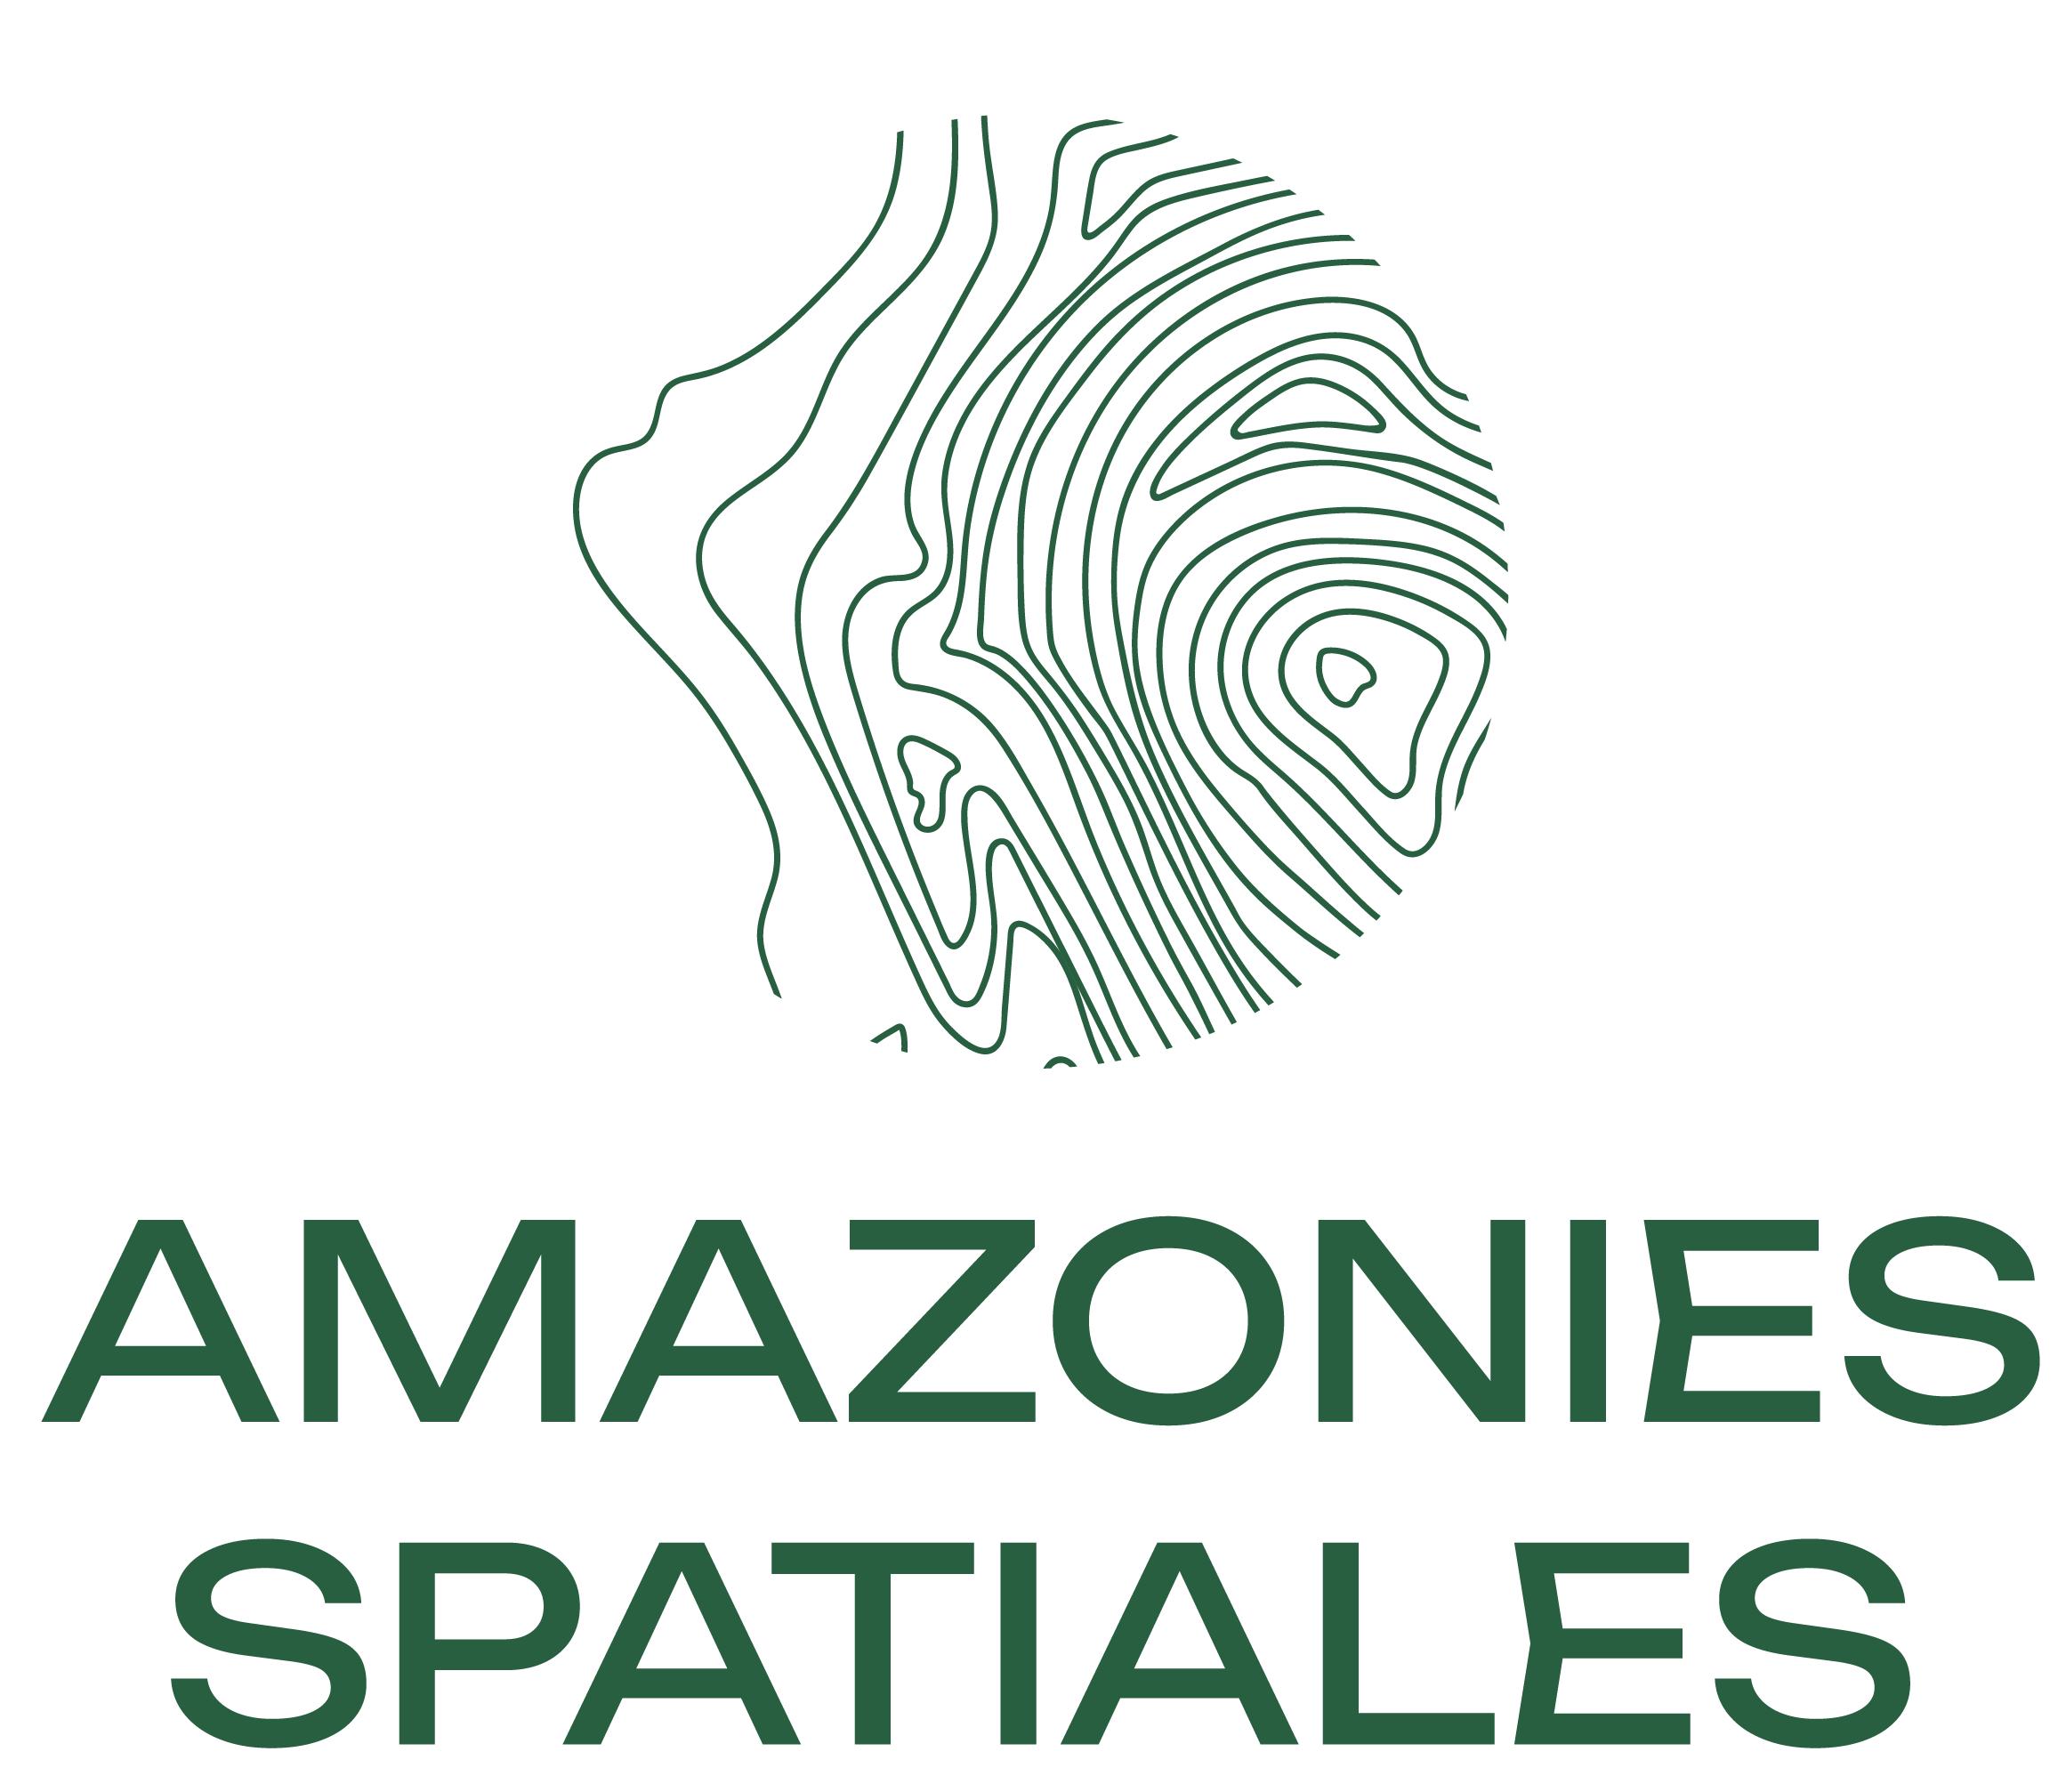 Amazonies spatiales (nouvelle fenêtre)